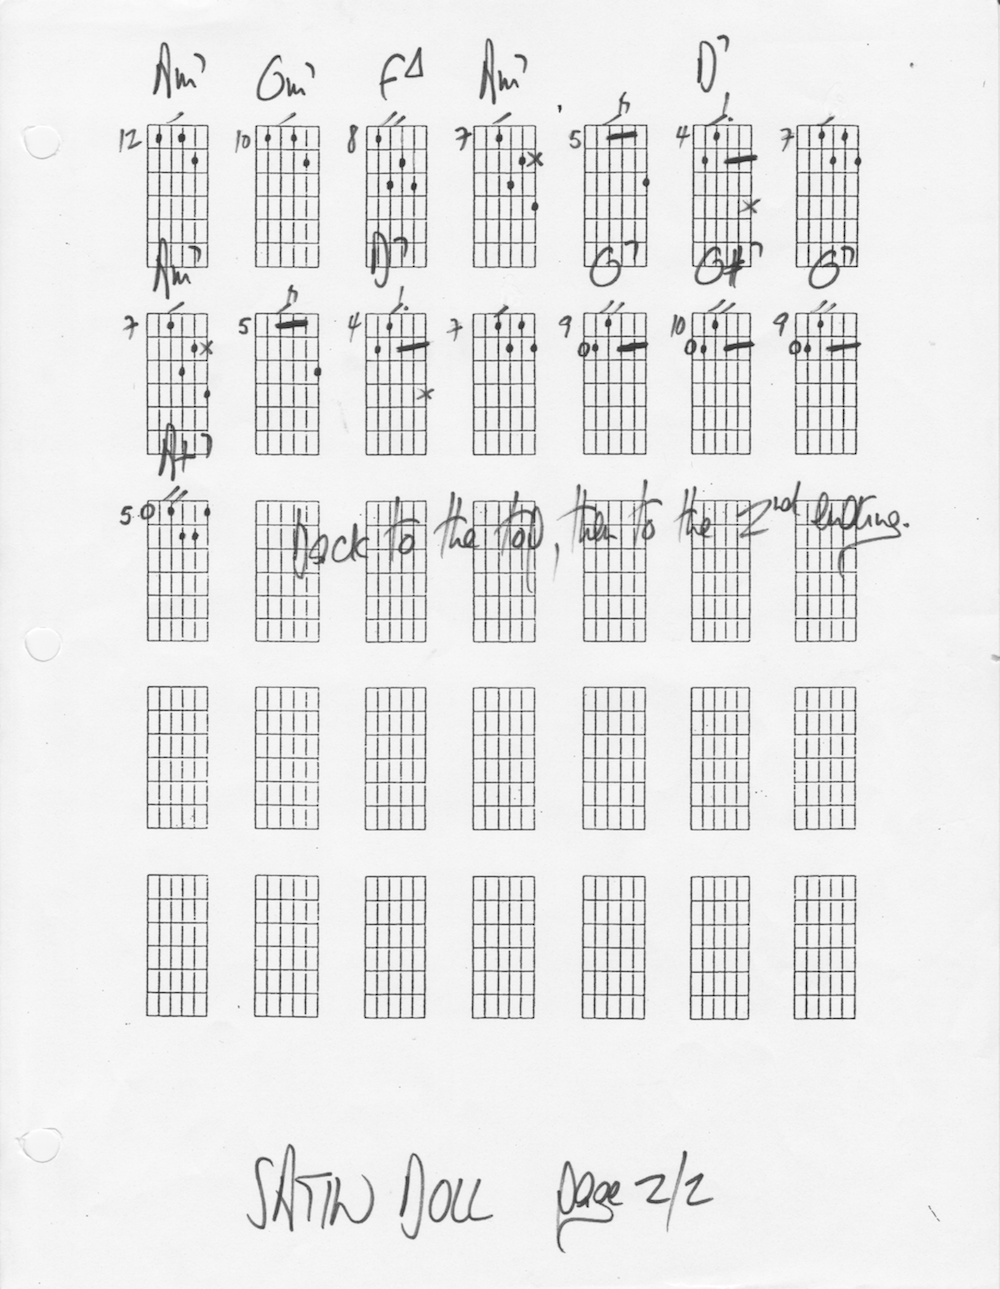 Satin Doll chord melody - Page 2/2 - La Chaîne Guitare